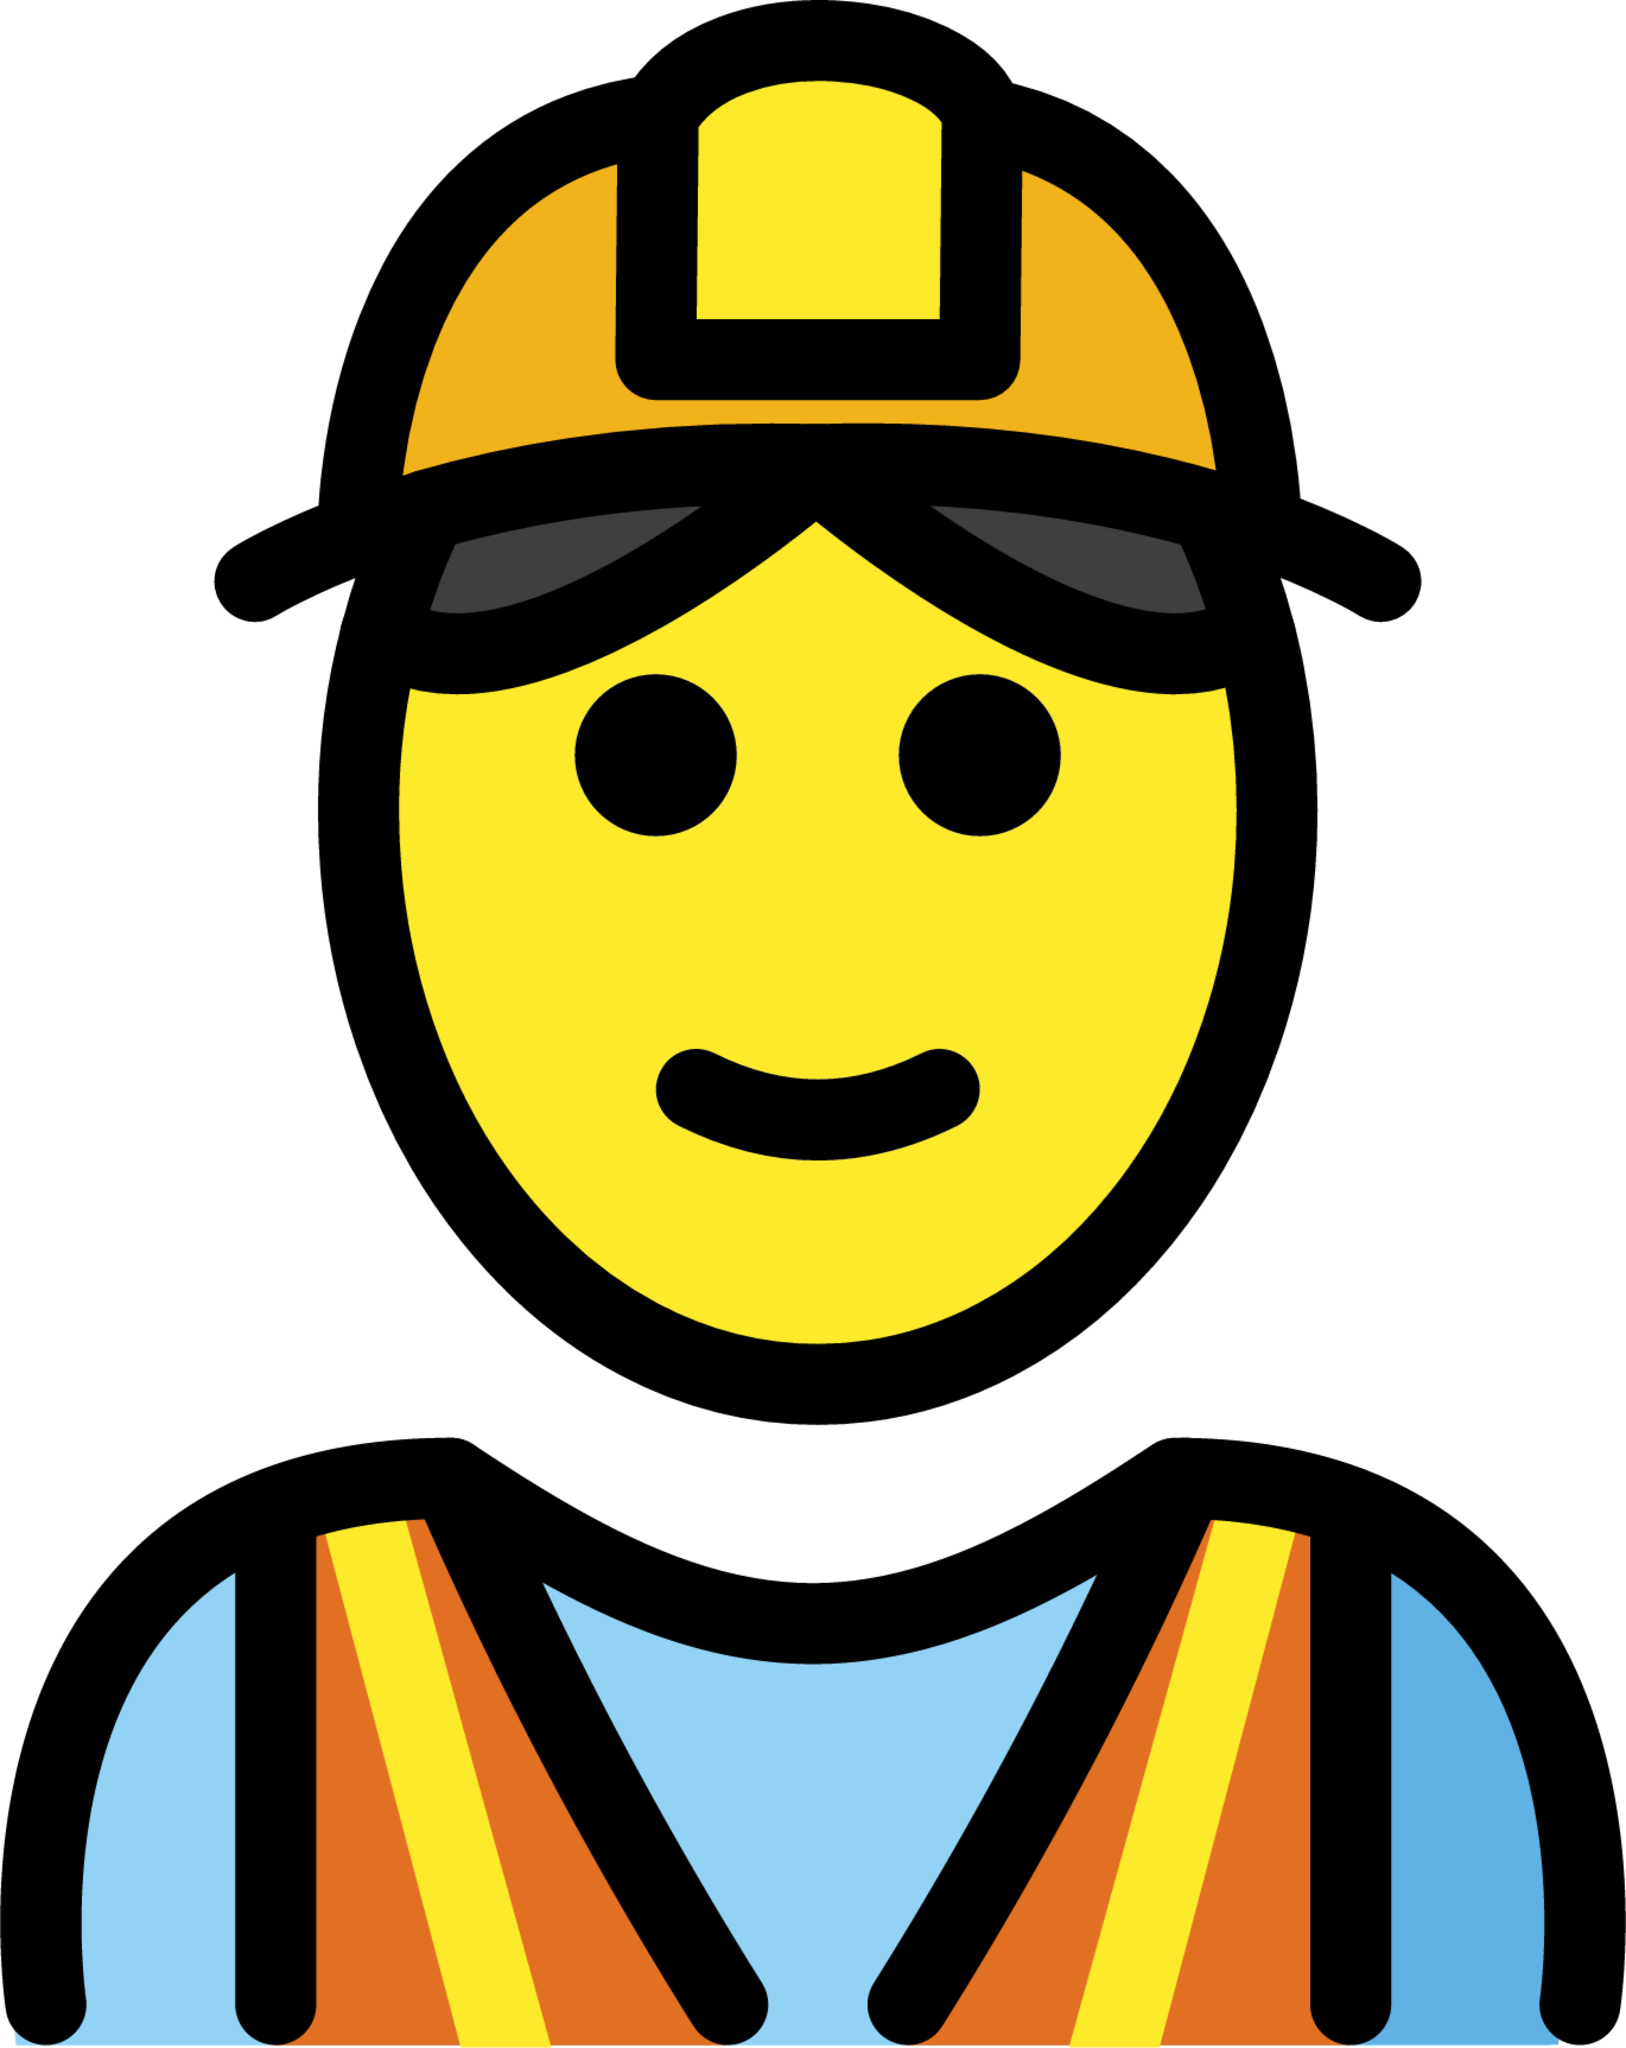 construction worker emoji